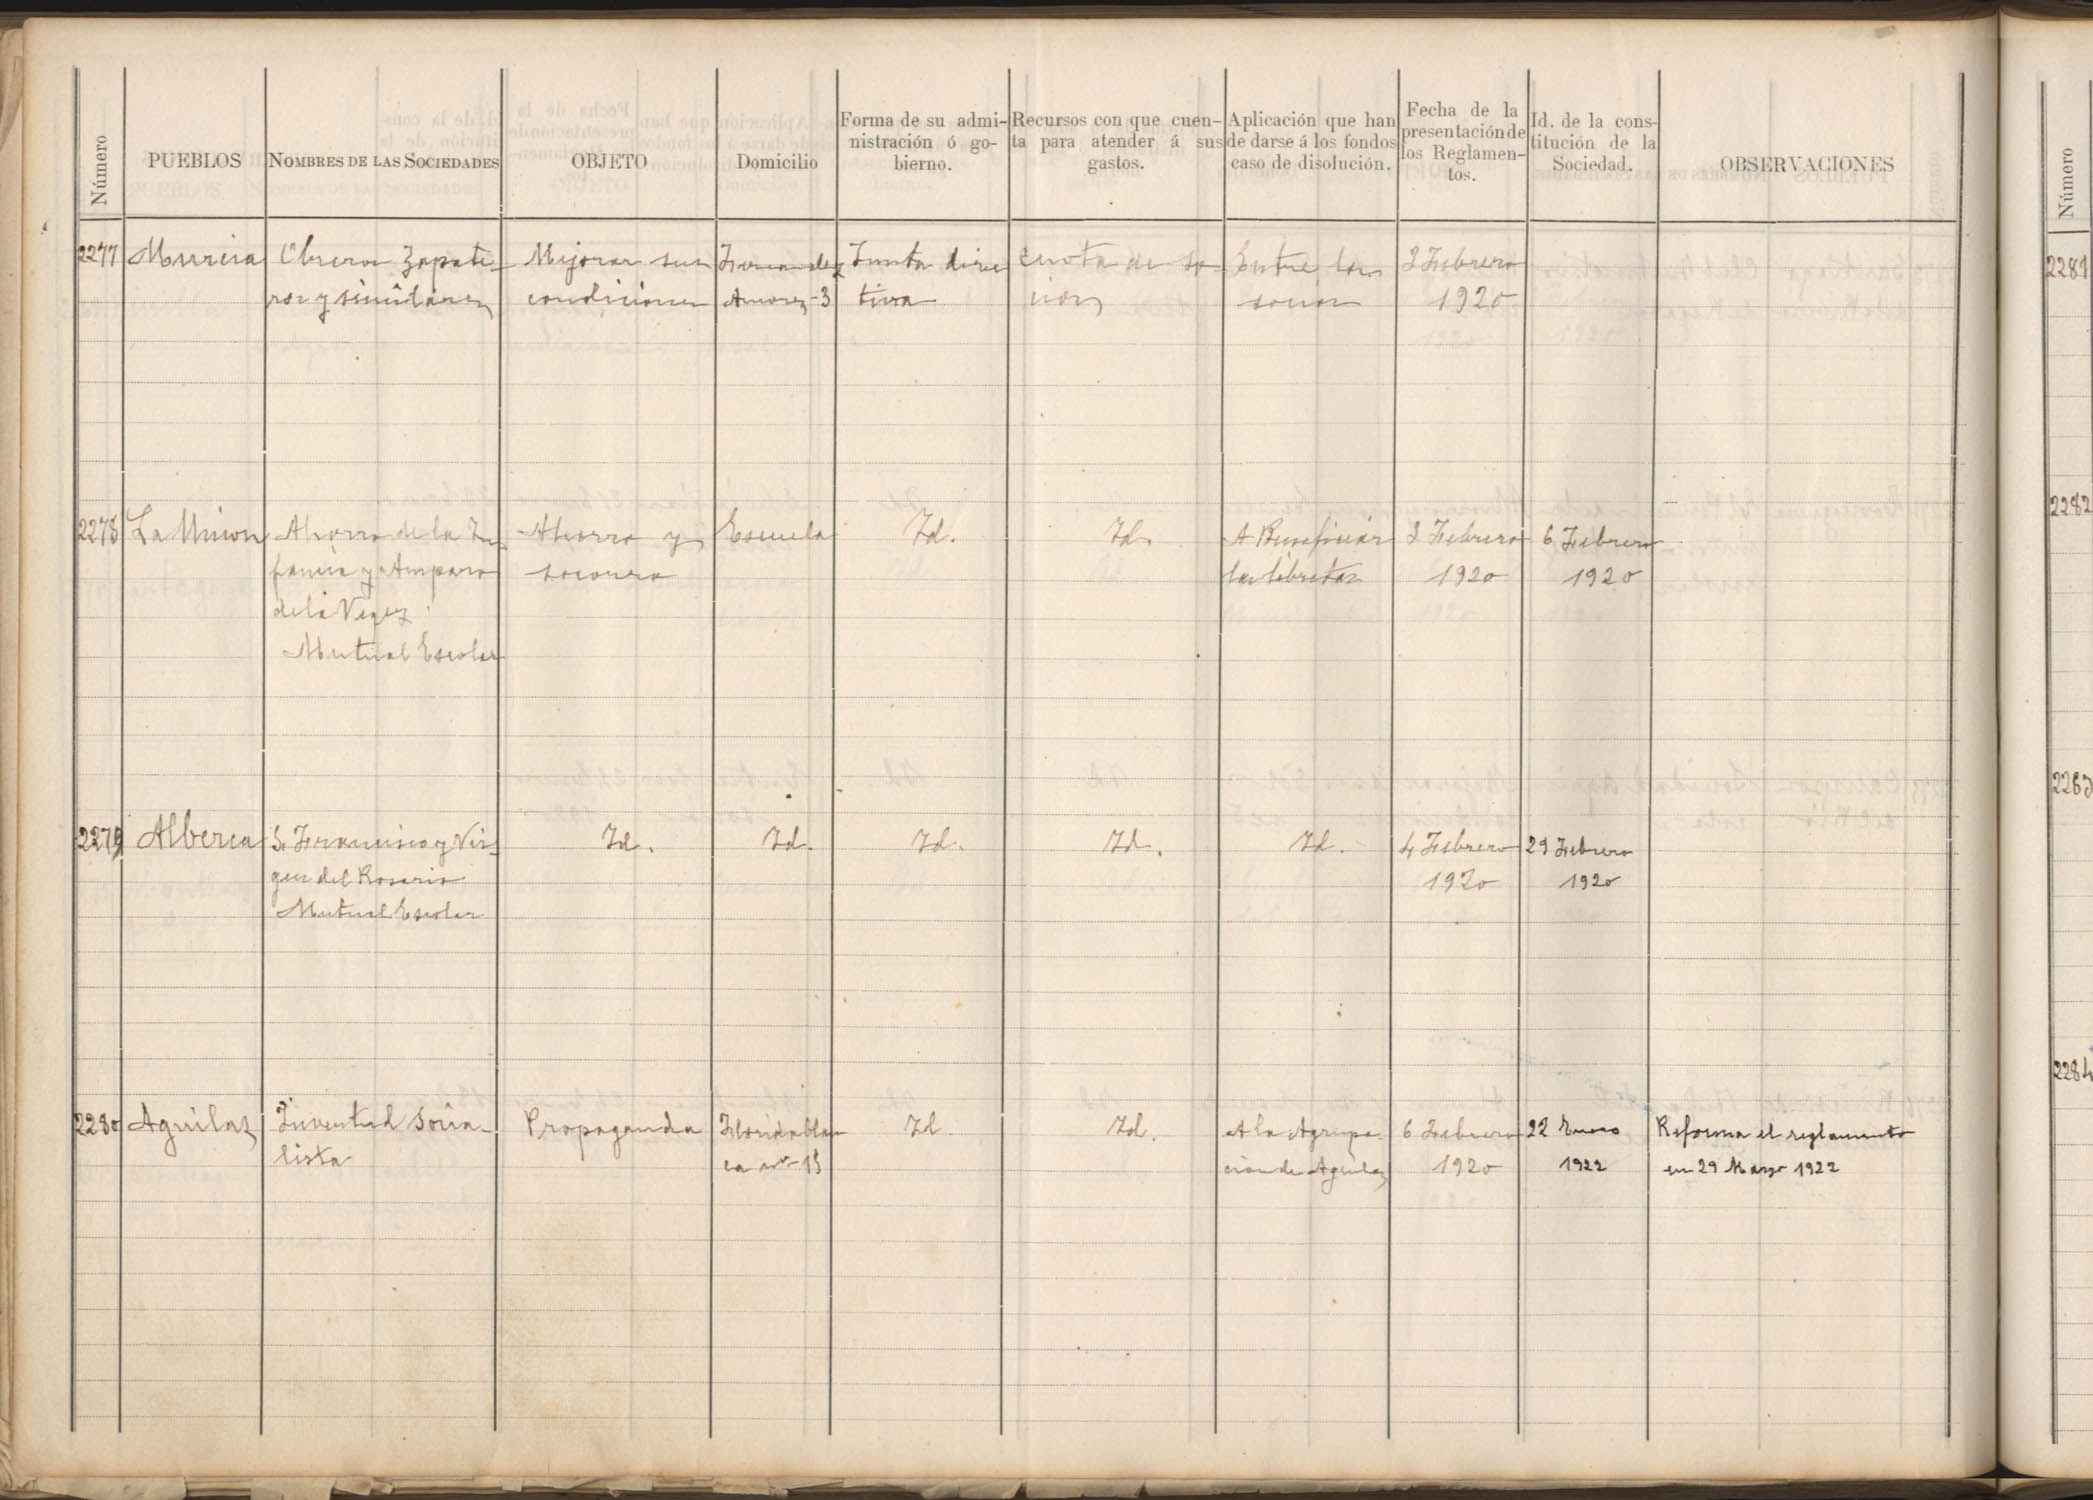 Registro de Asociaciones: nº 2276-2325. Año 1920.